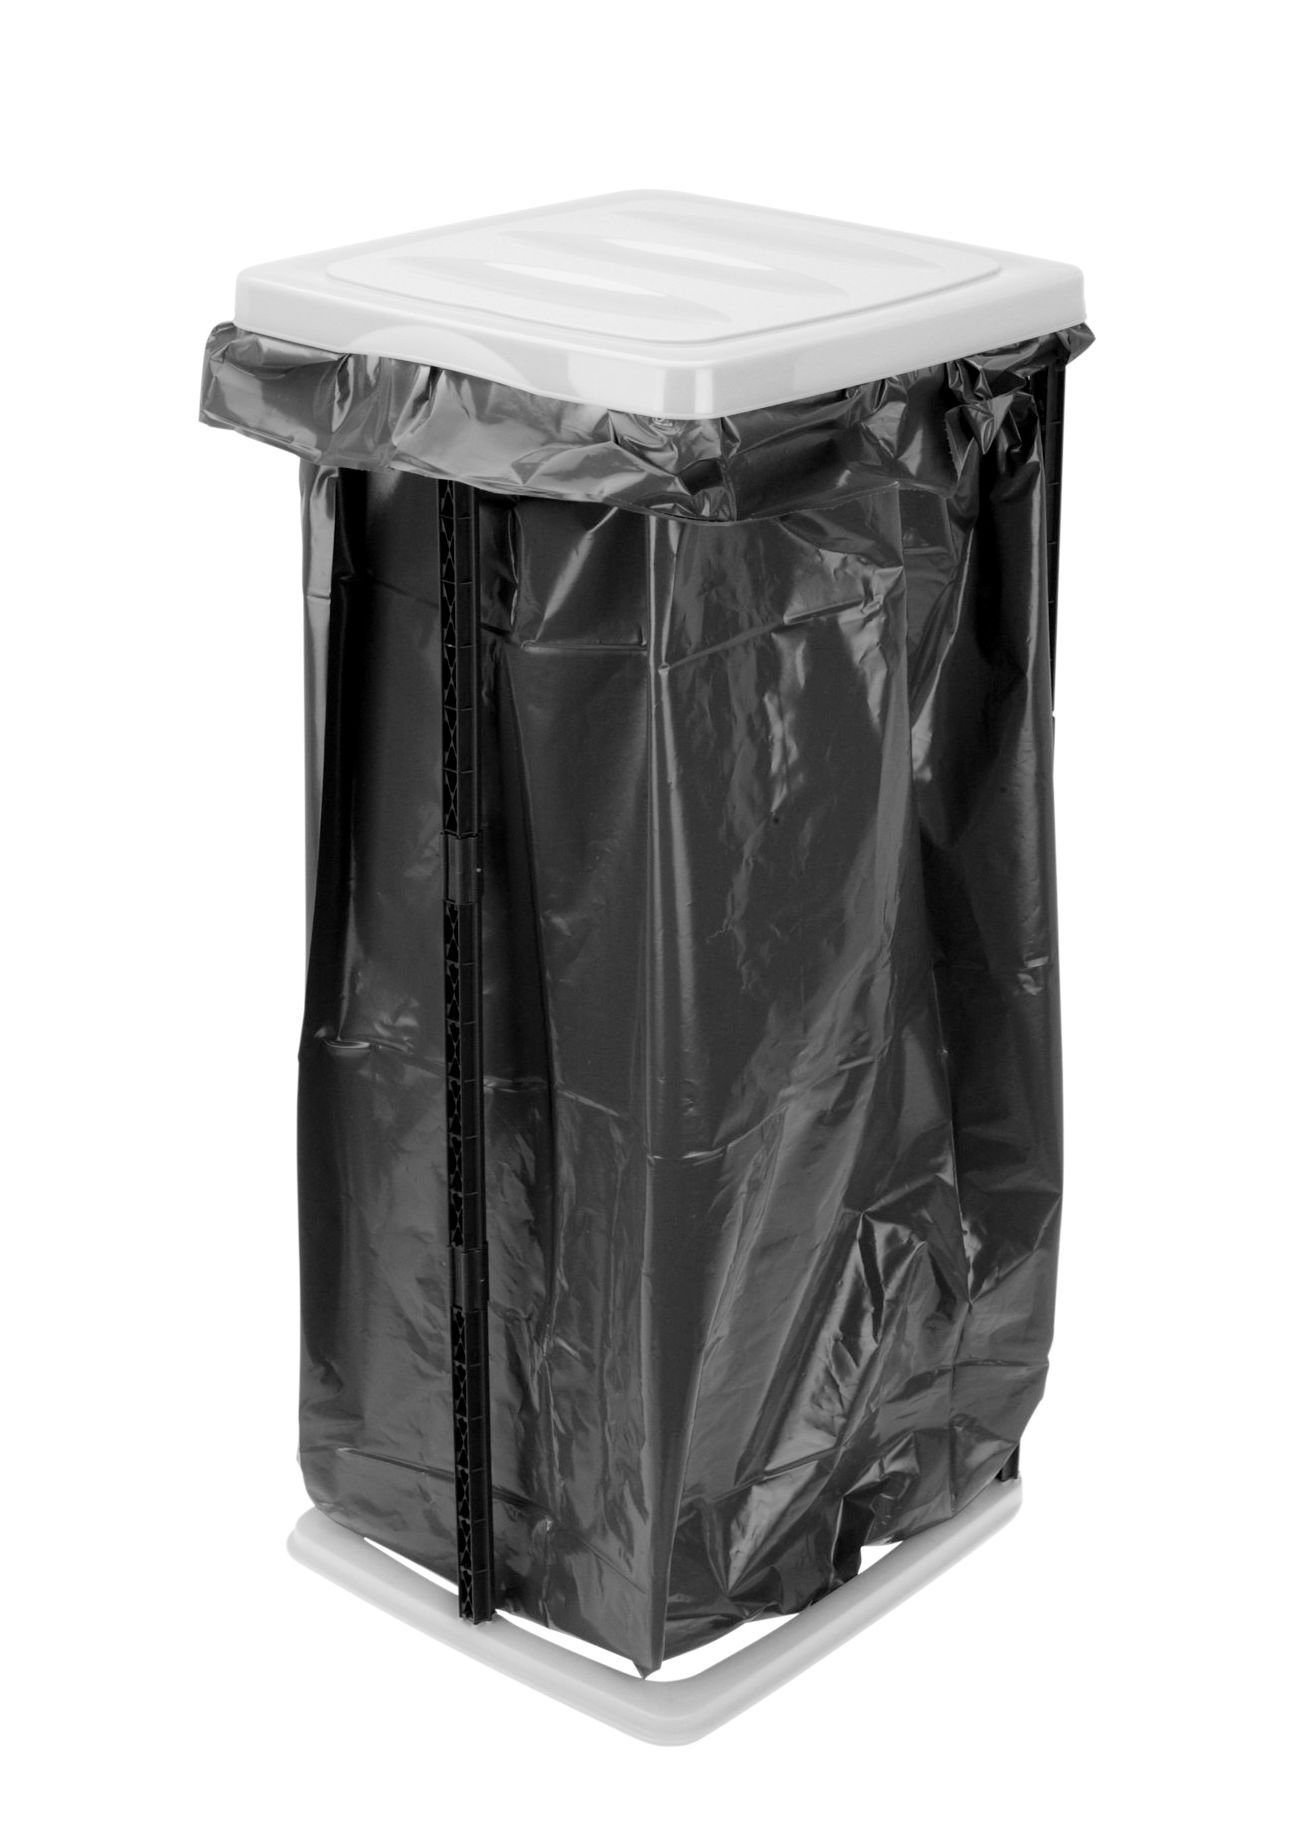 Hinrichs Müllsackständer - 2x Müllsackhalter mit Deckel und Klemmring